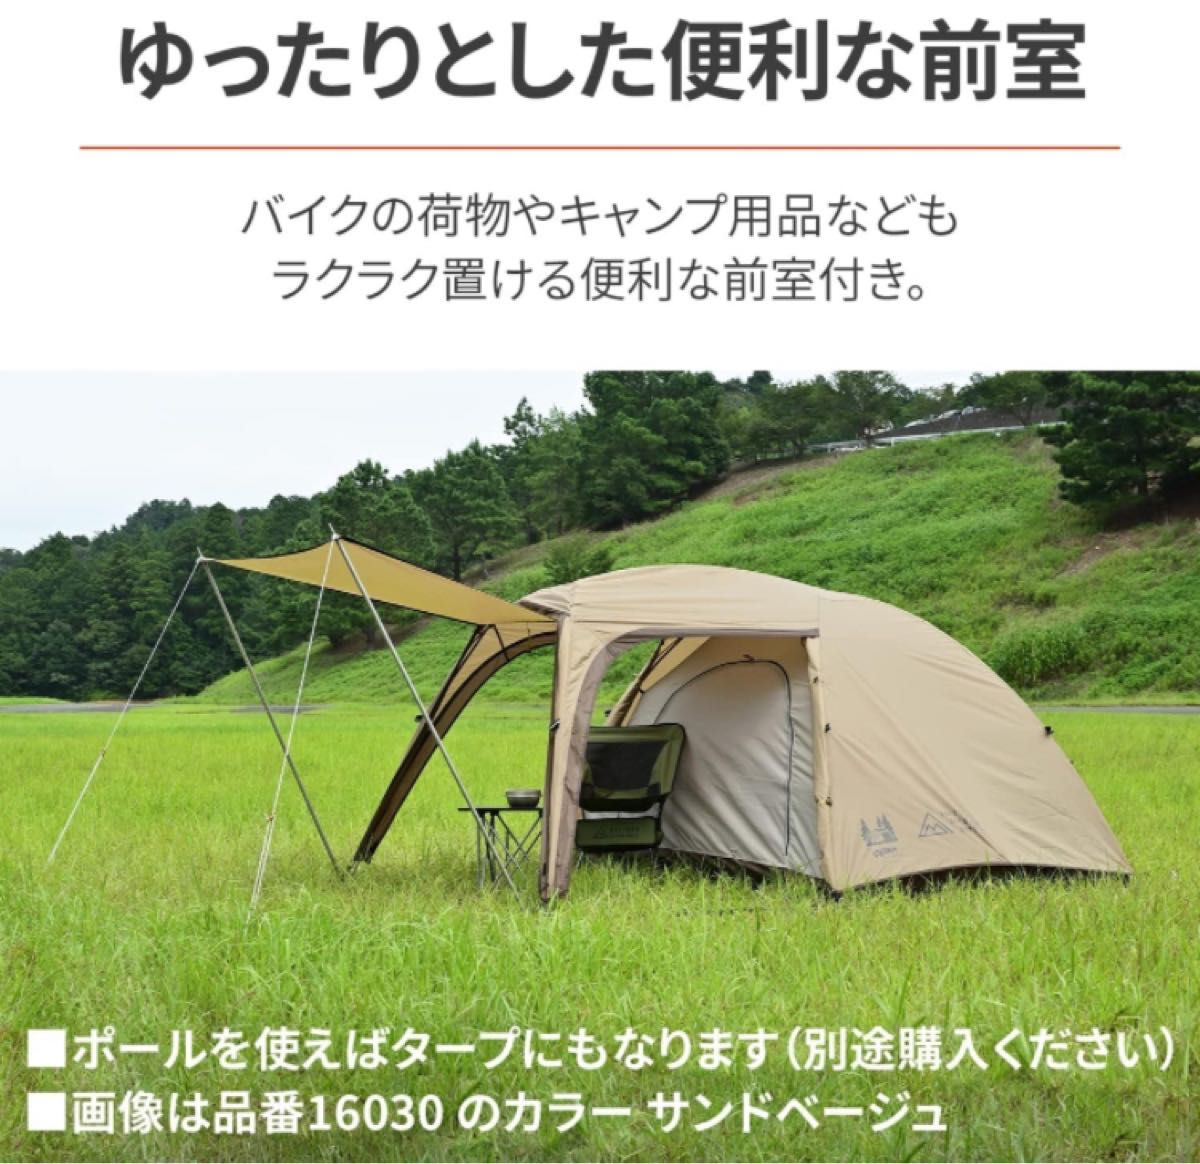 【新品】デイトナ ツーリングテント ST-Ⅱ カーキ テント キャンプ ツーリング DAYTONA 16032 